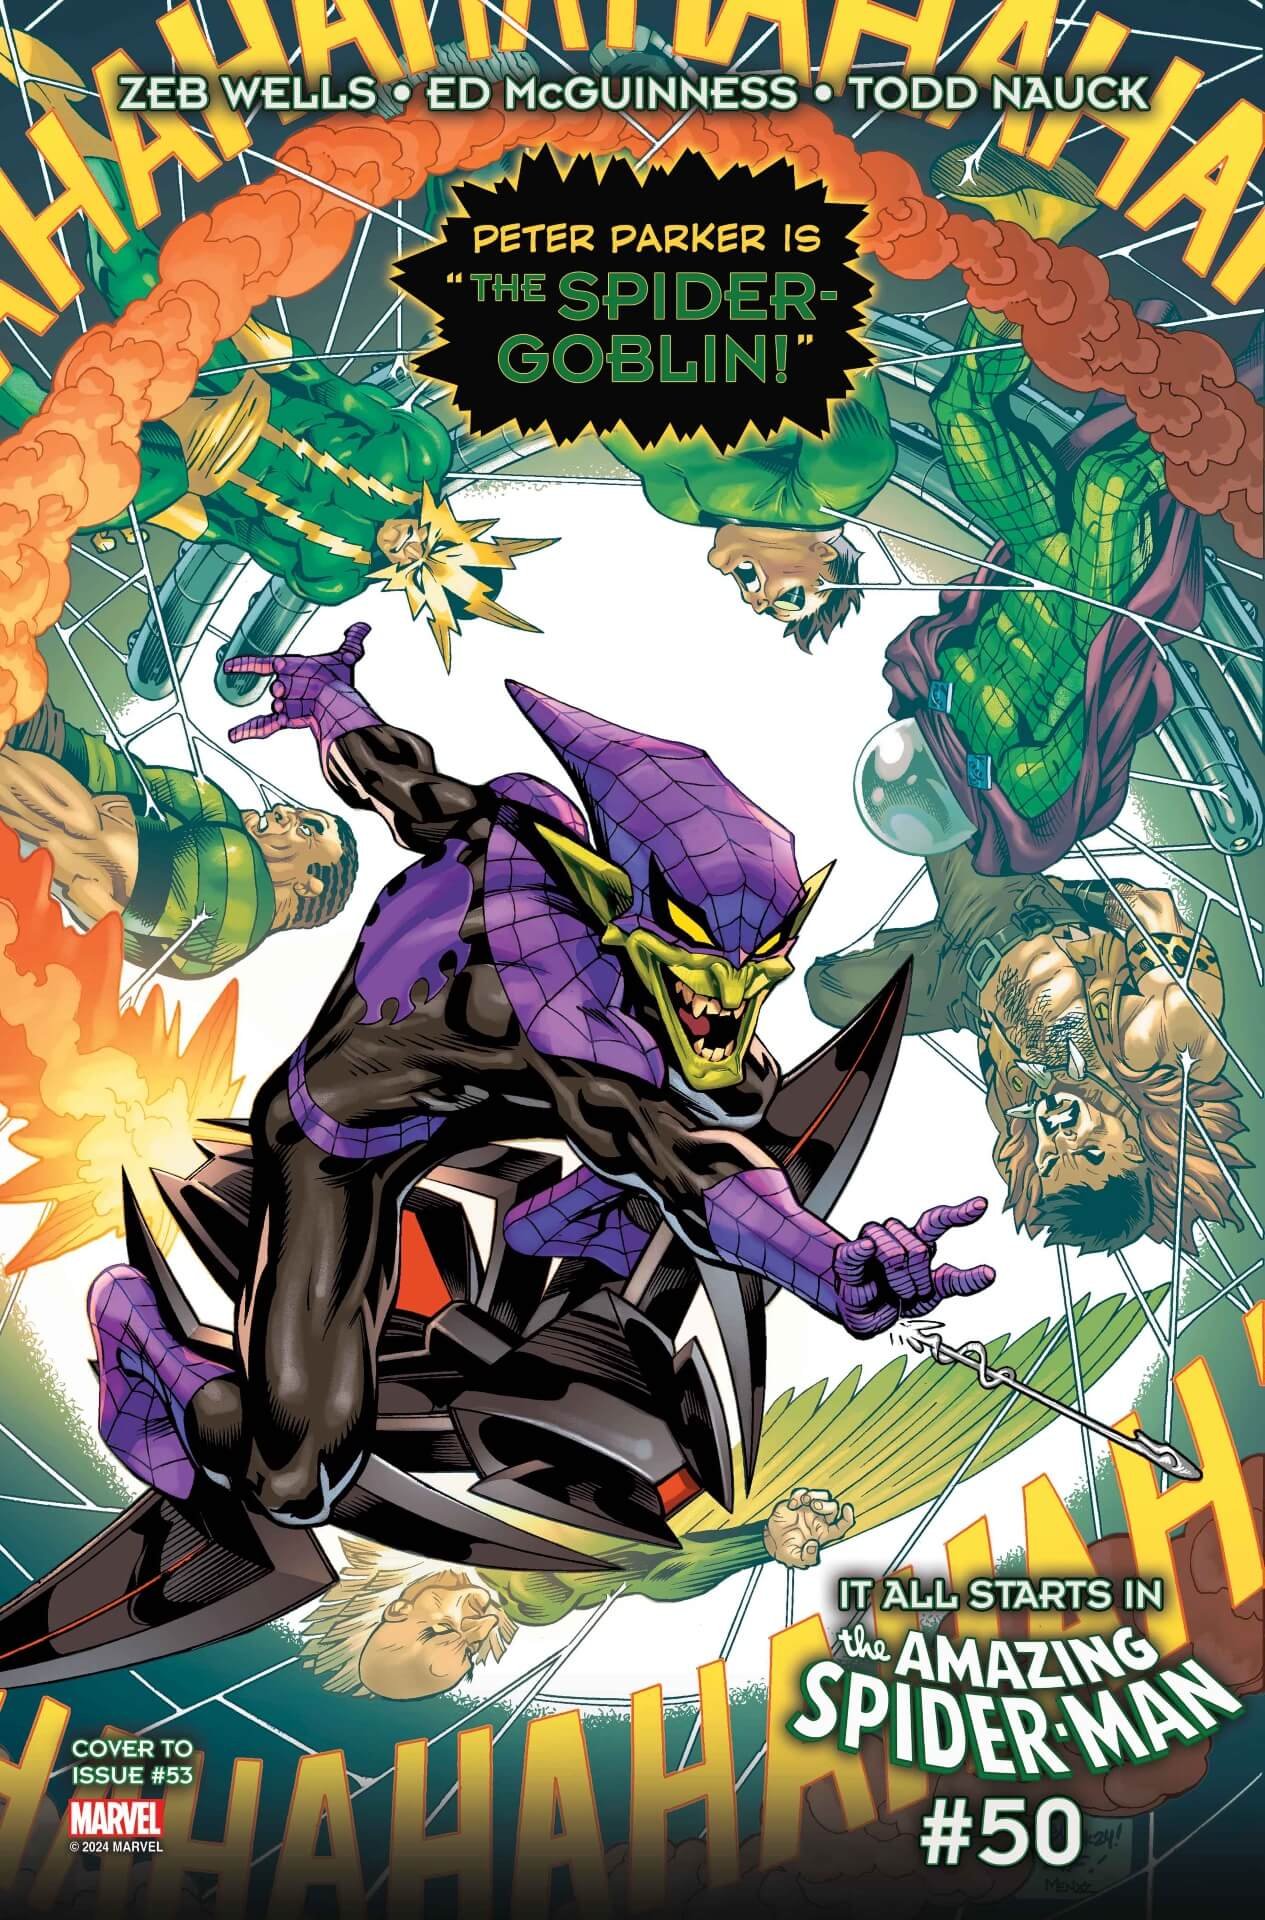 Cover di Amazing Spider-Man 53 di Ed McGuiness, con l'esordio di Spider-Goblin